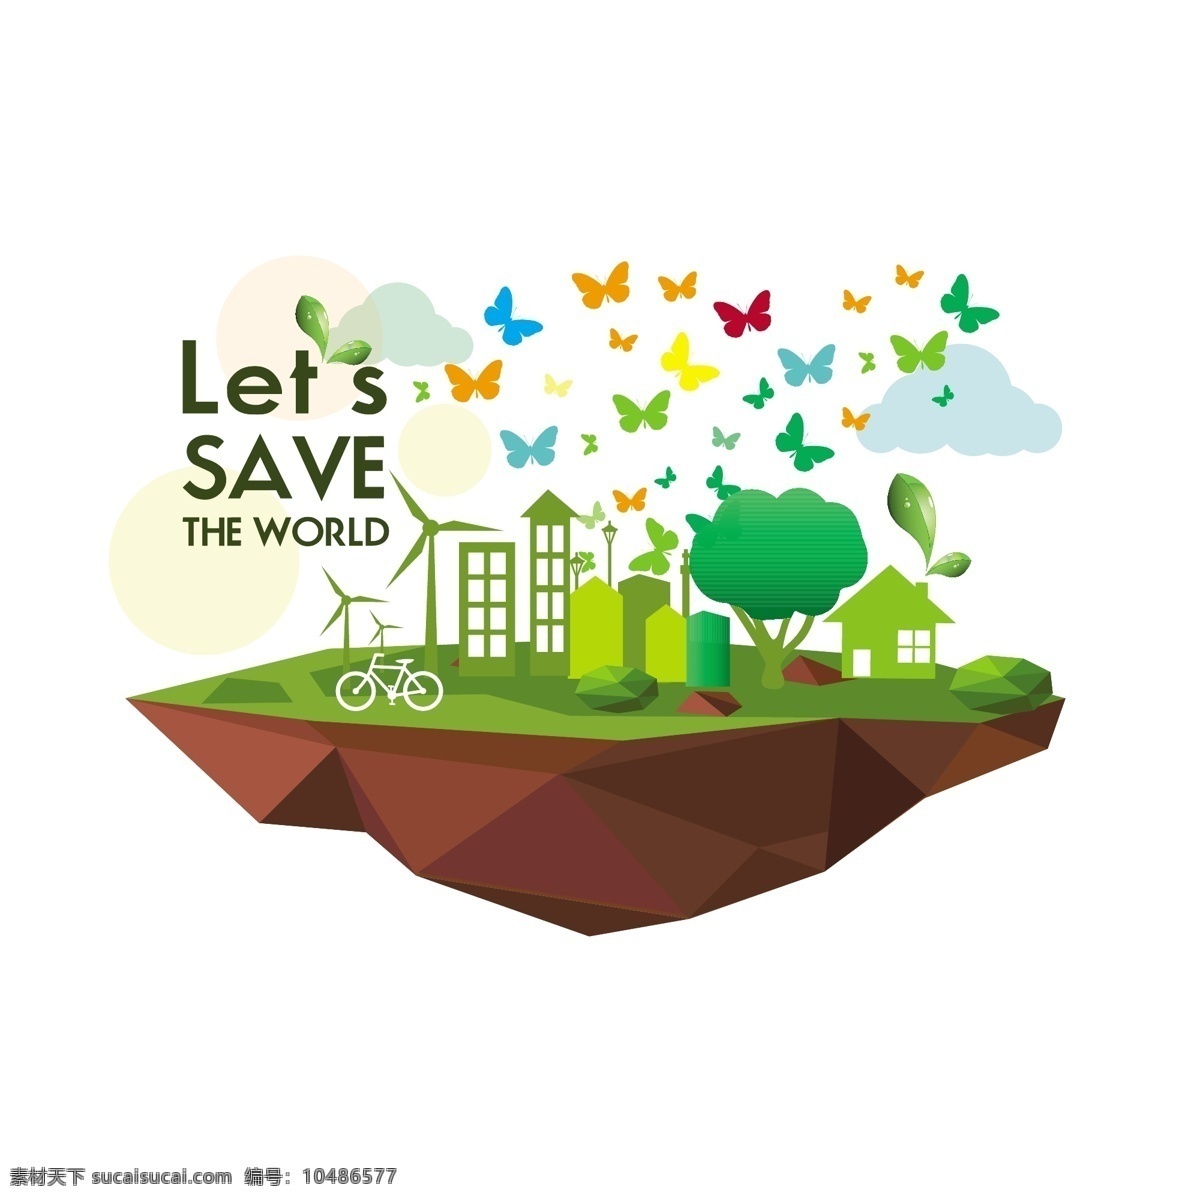 生态信息图表 环保 创意设计 eco 绿色 蝴蝶图案 循环 能源 节能 低碳 生态 回收 环保标志 ppt素材 底纹背景 商务金融 商业插画